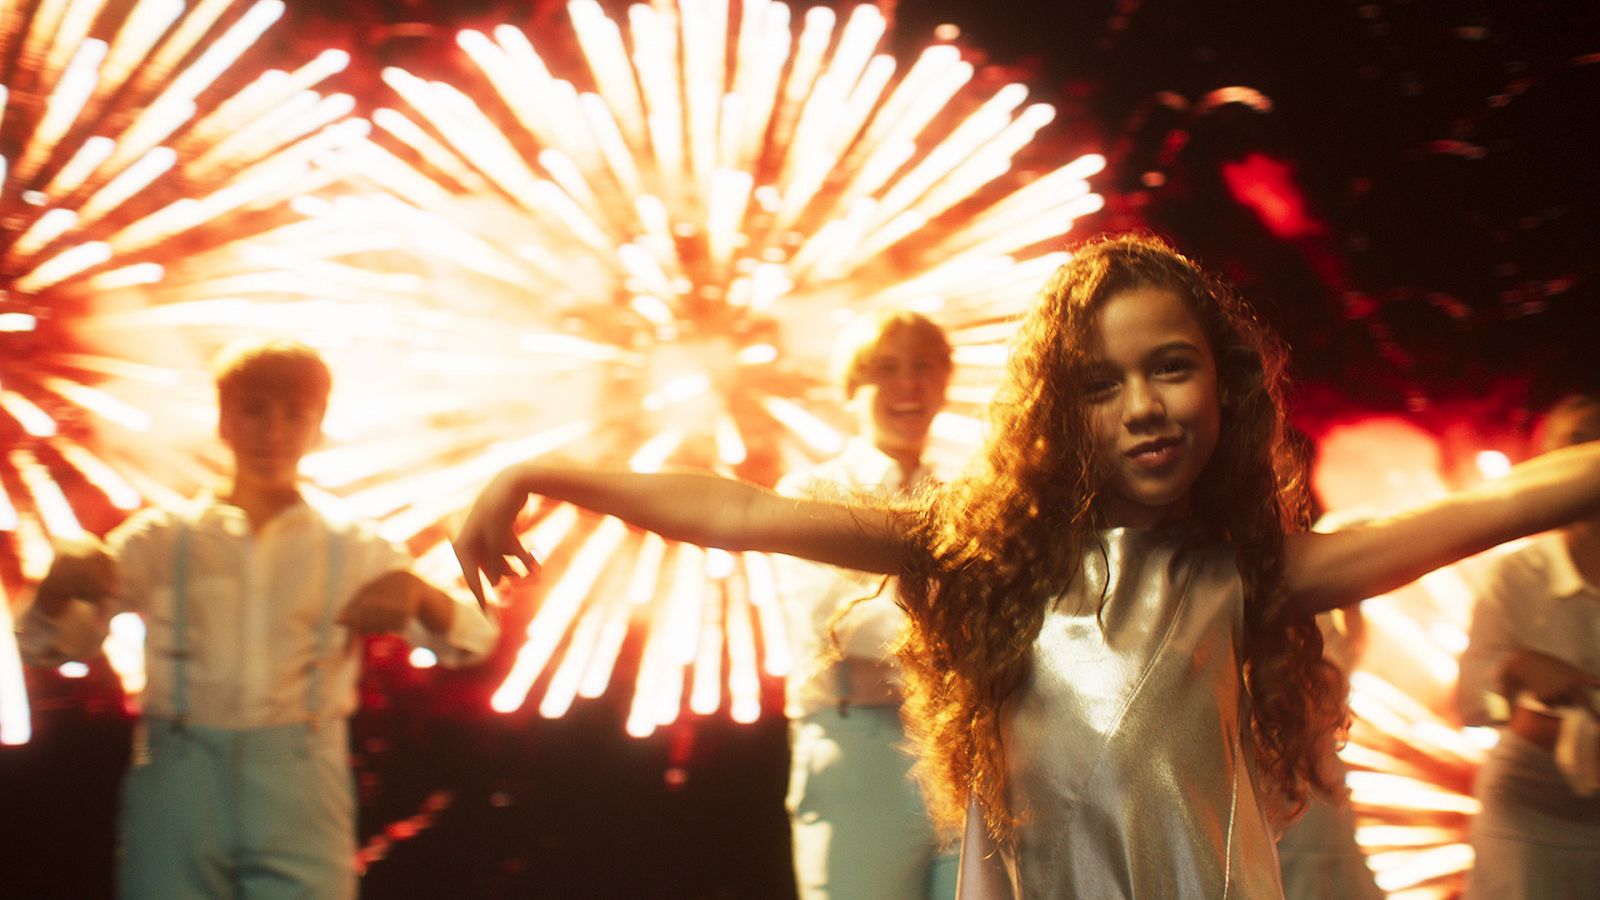 Eurovisión Junior 2023: Sandra Valero estrena el videoclip de "Loviu" - Ver ahora